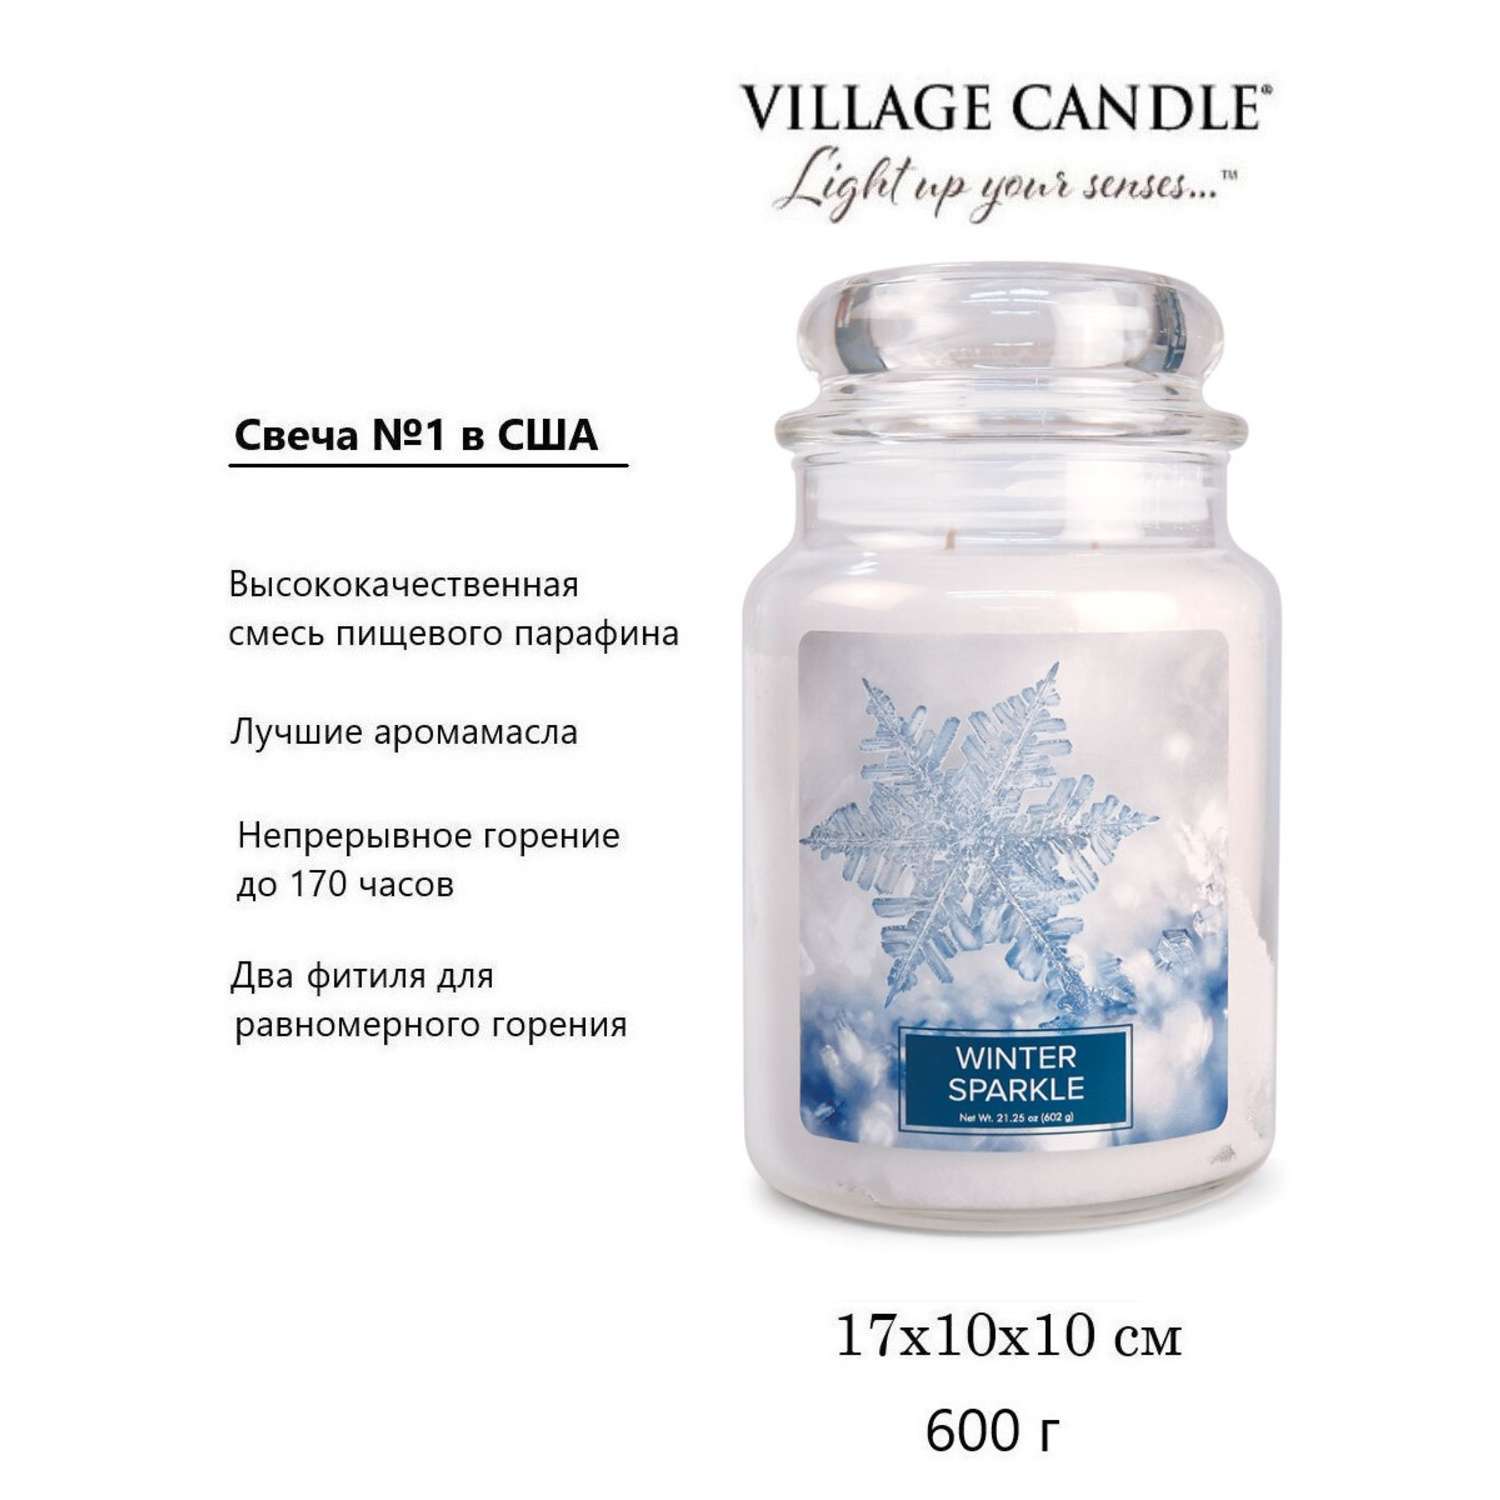 Свеча Village Candle ароматическая Первый Снег 4260190 - фото 3